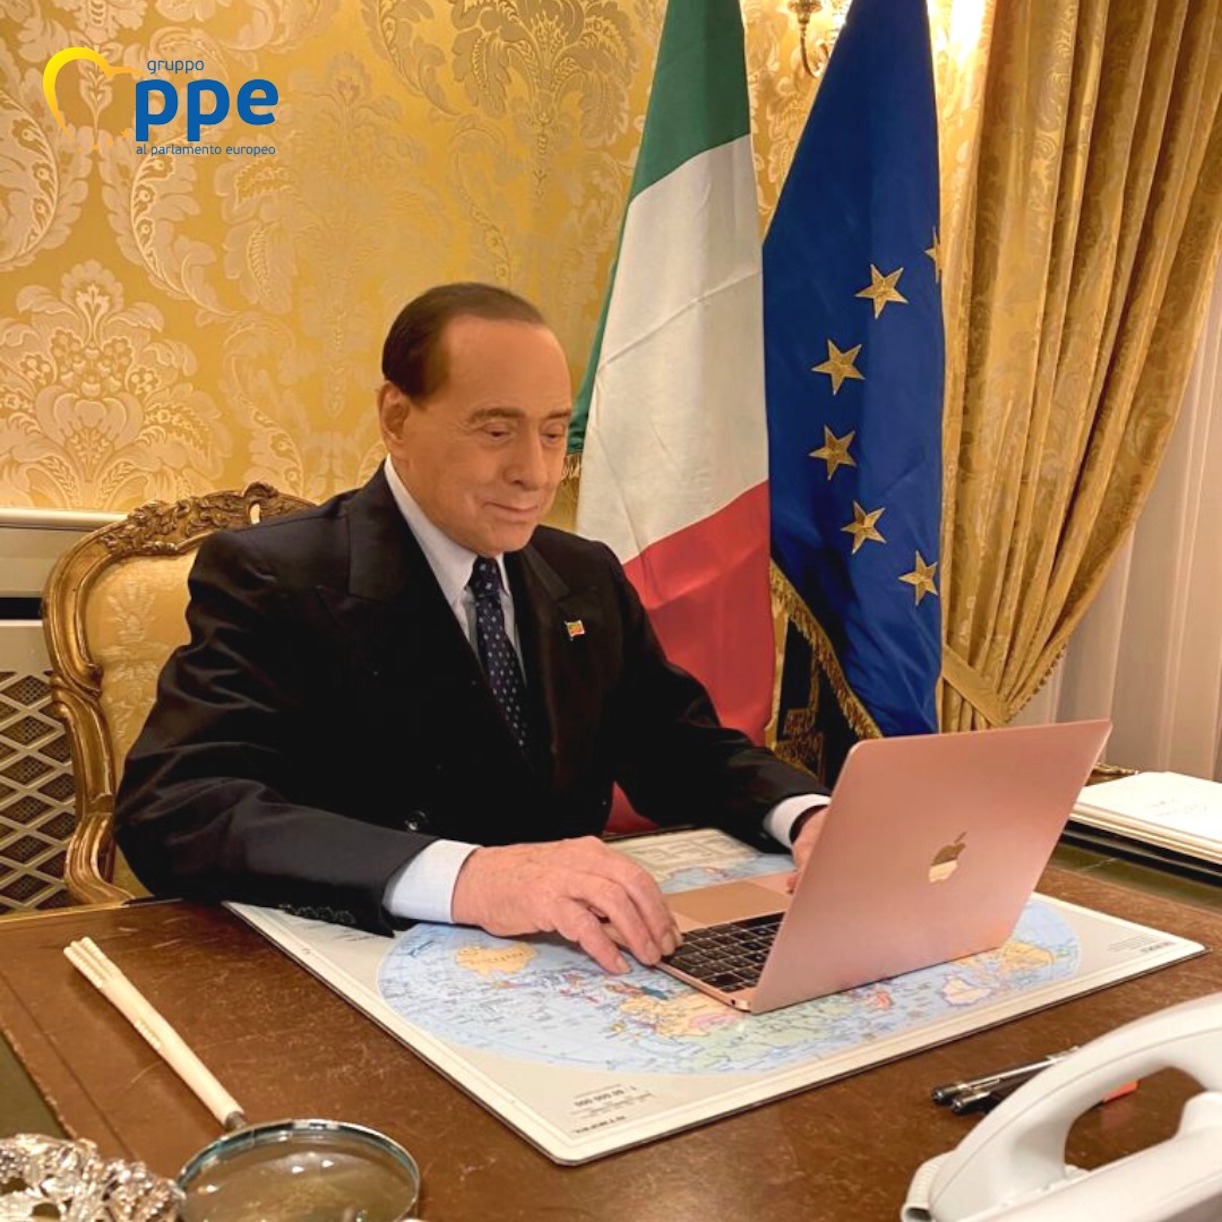 Ppe contro Berlusconi: “È ora che si ritiri”